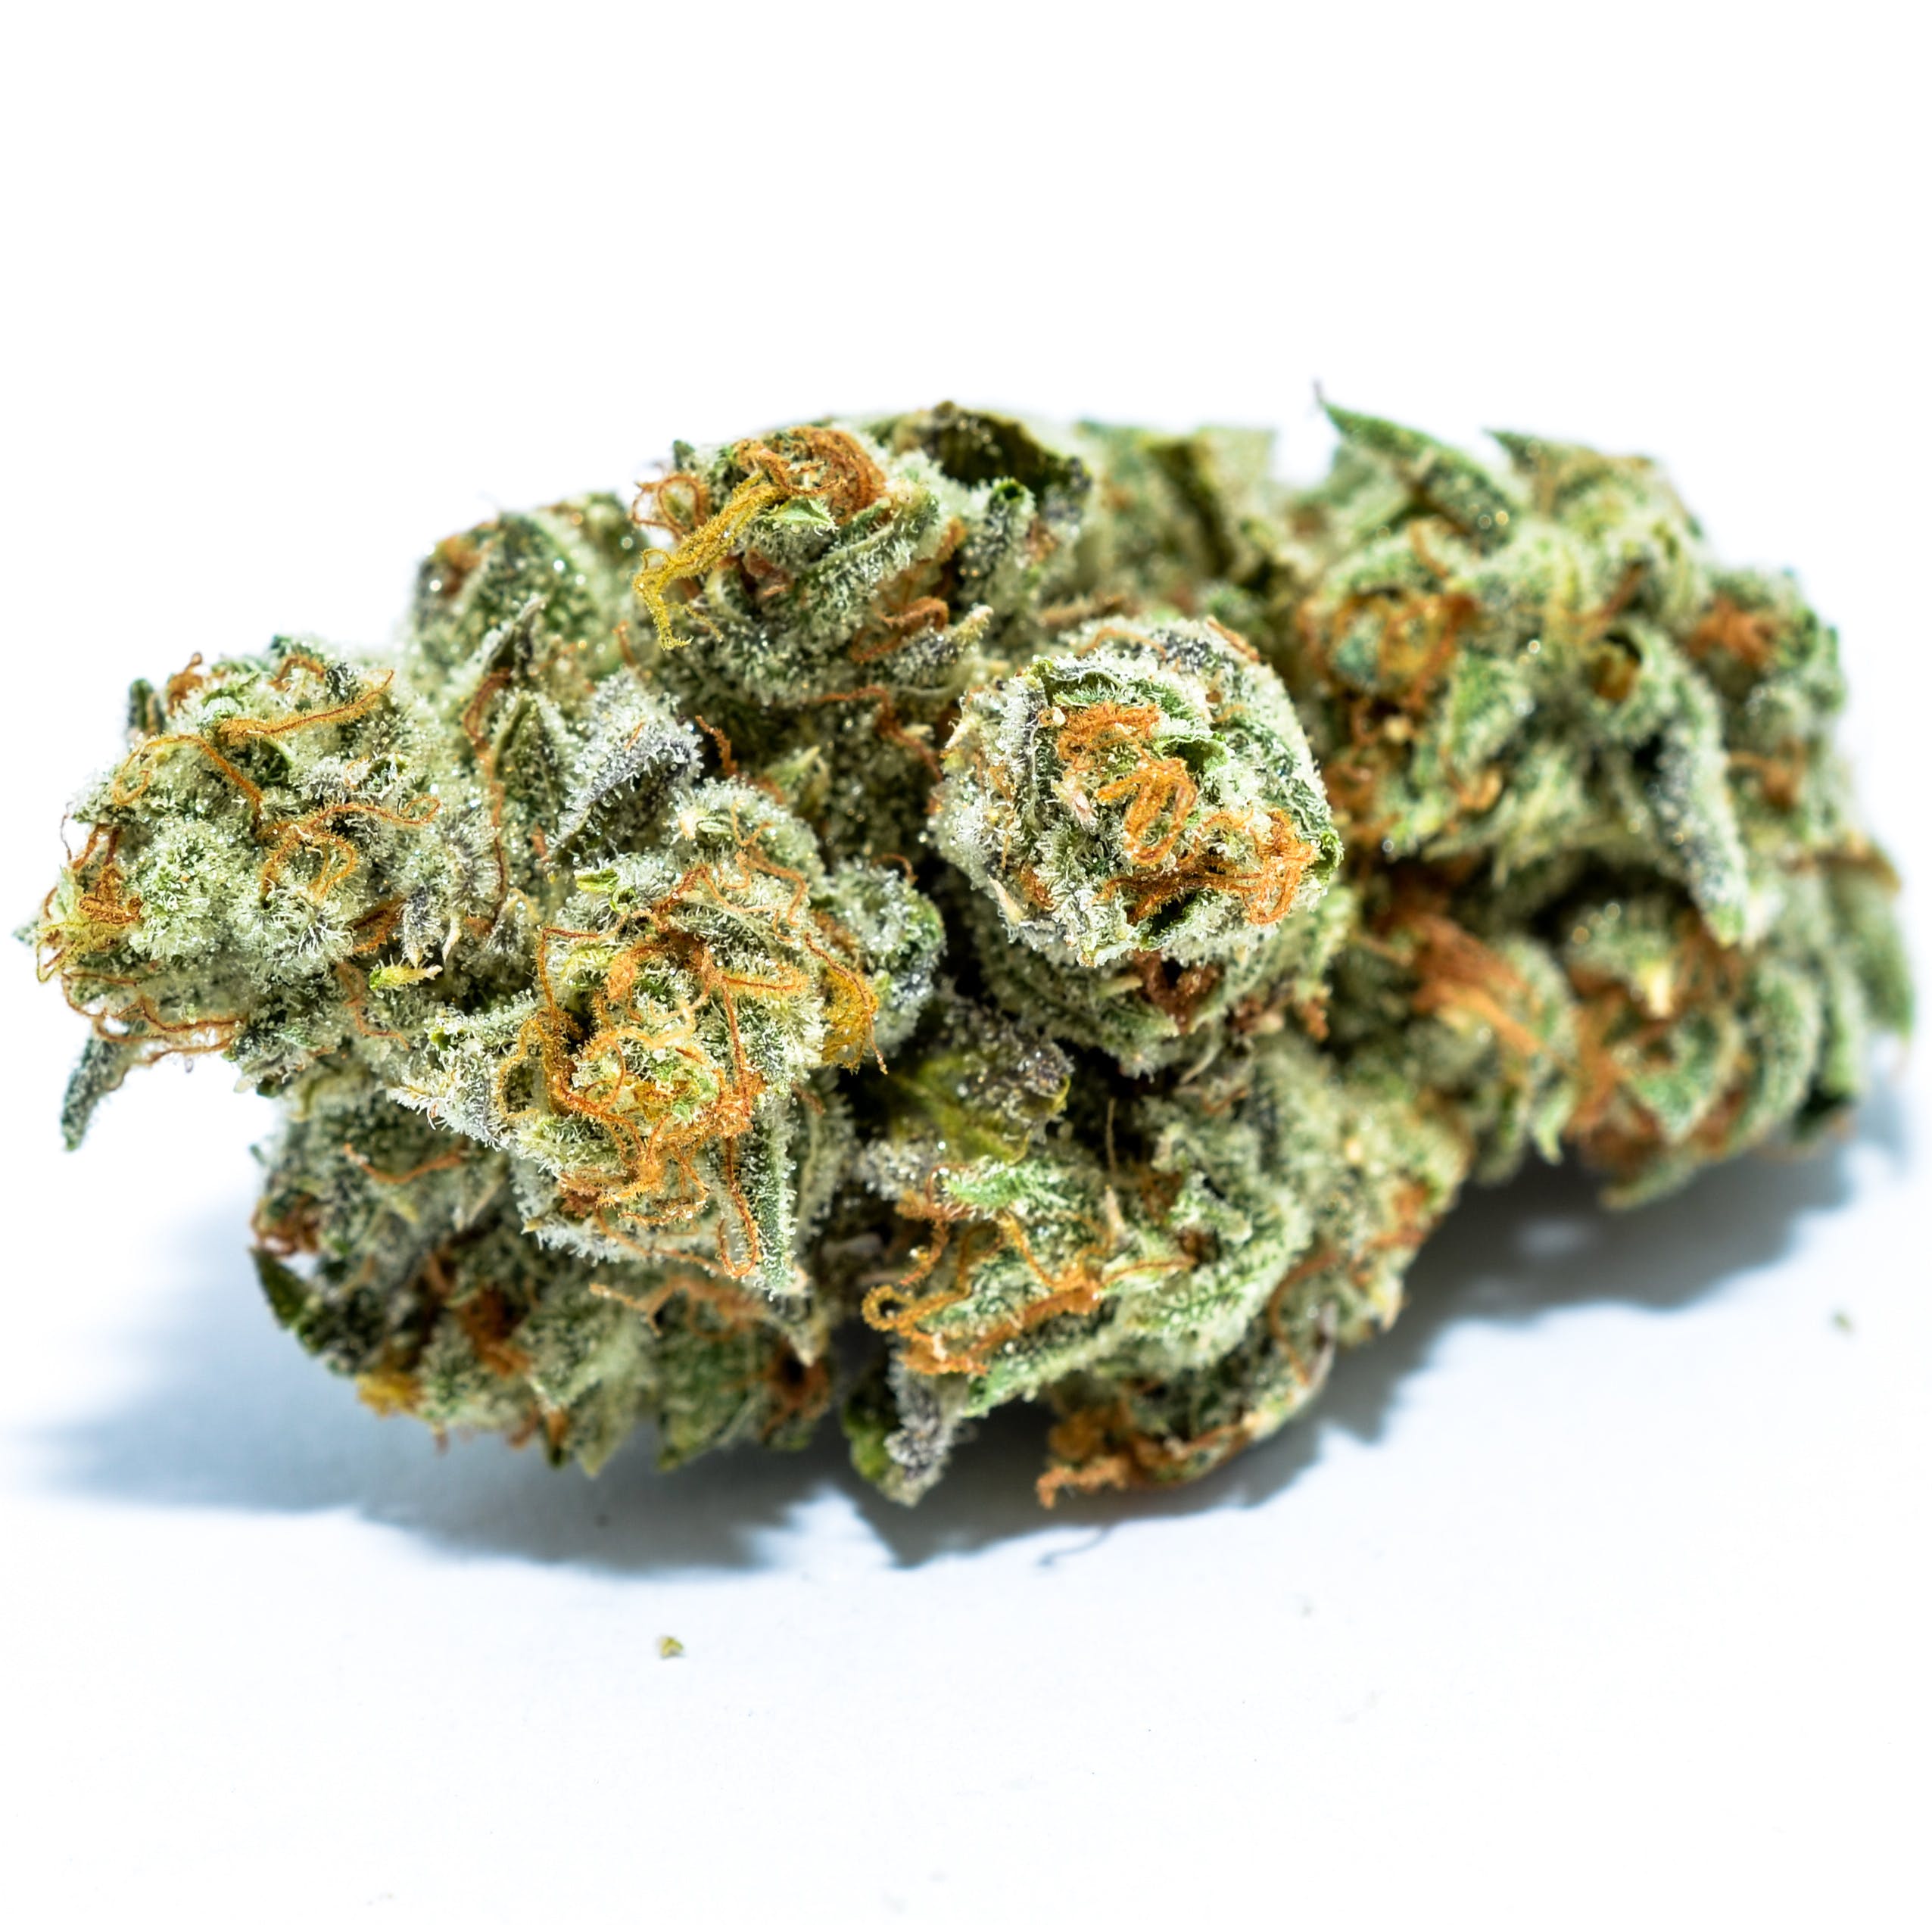 marijuana-dispensaries-natural-remedies-caregivers-in-los-angeles-thc-design-24k